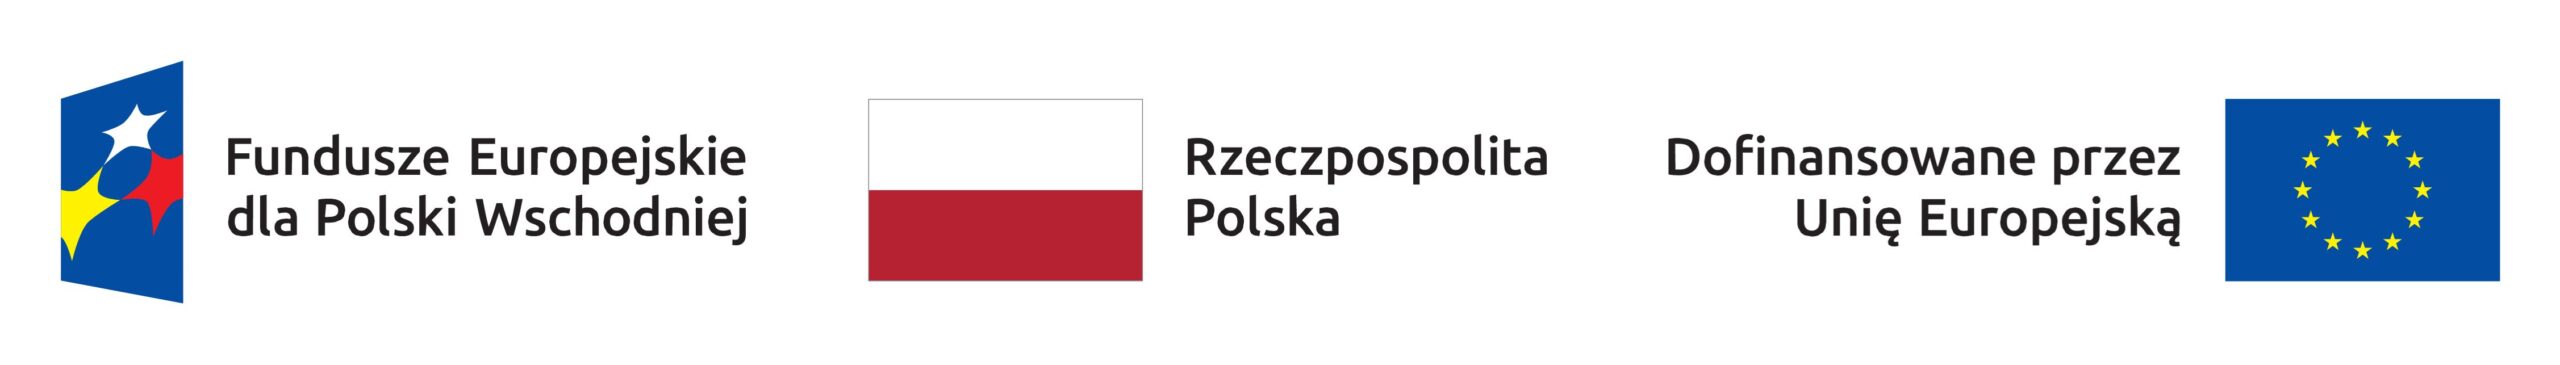 Logo Funduszy Europejskich dla Polski Wschodniej, Flaga Rzeczpospolitej Polskiej, Logo Dofinansowane z Unii Europejskiej, 